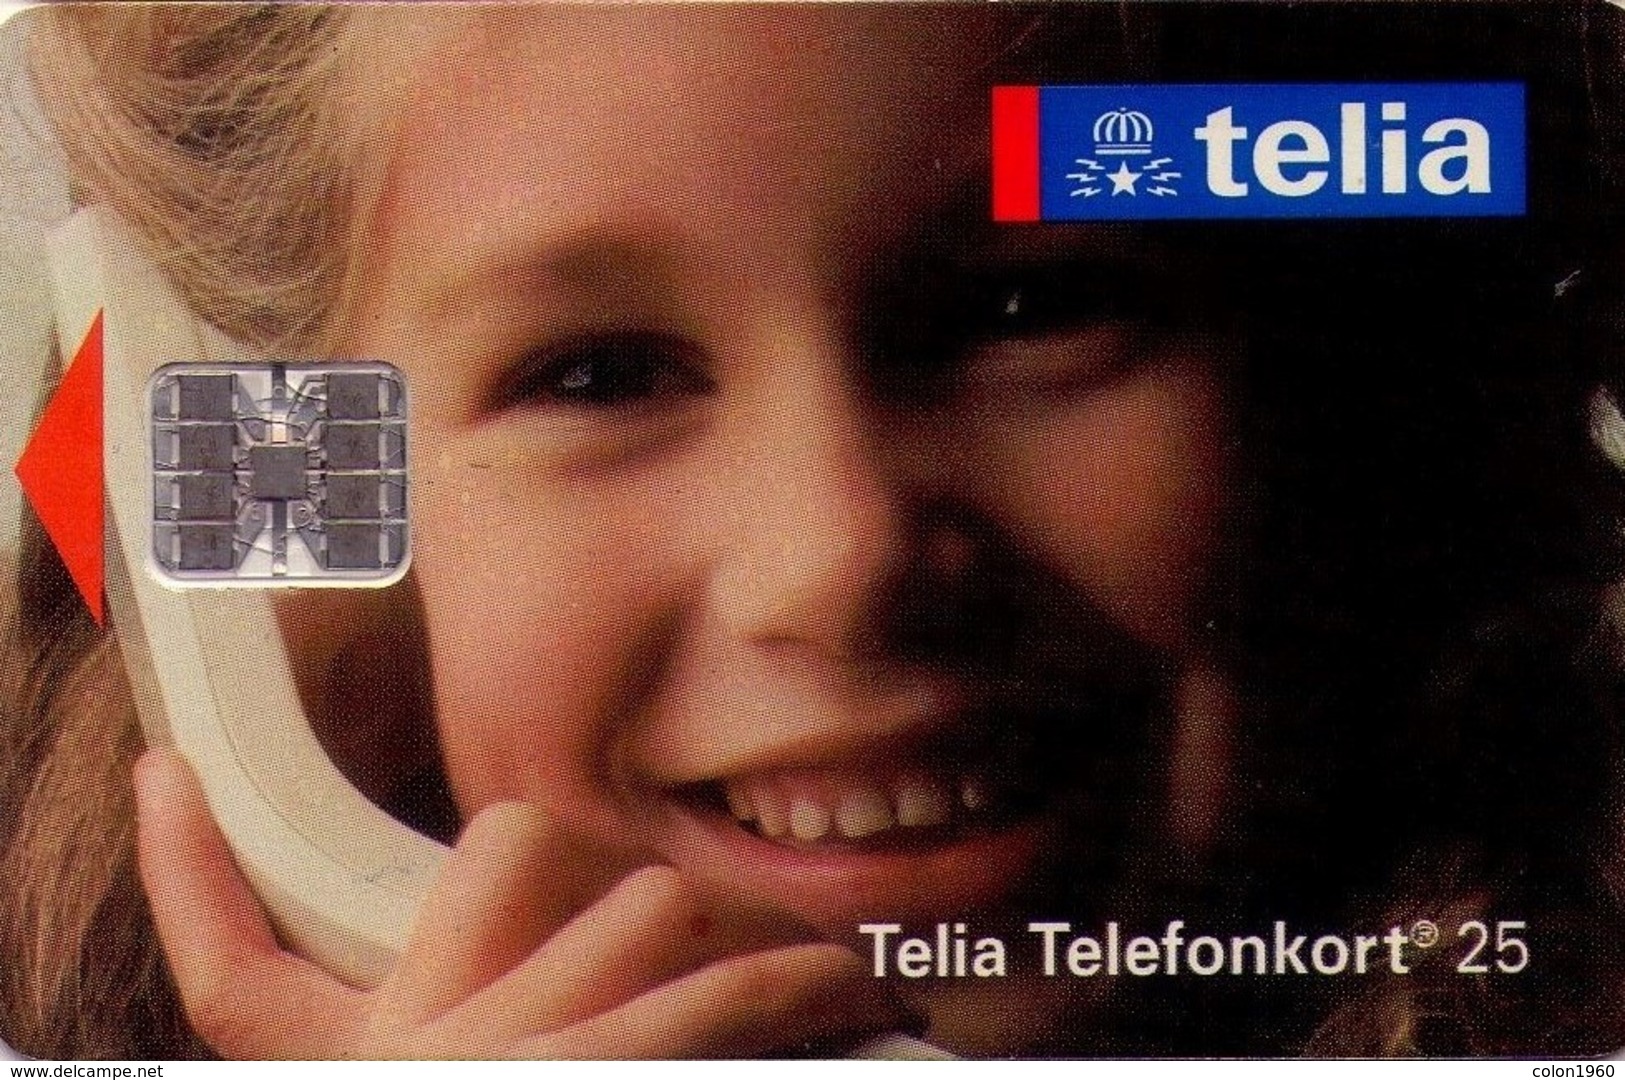 SUECIA. SE-TEL-025-0025A. Girl On The Phone - Telia-flicka. 1993-06. (553) - Suecia